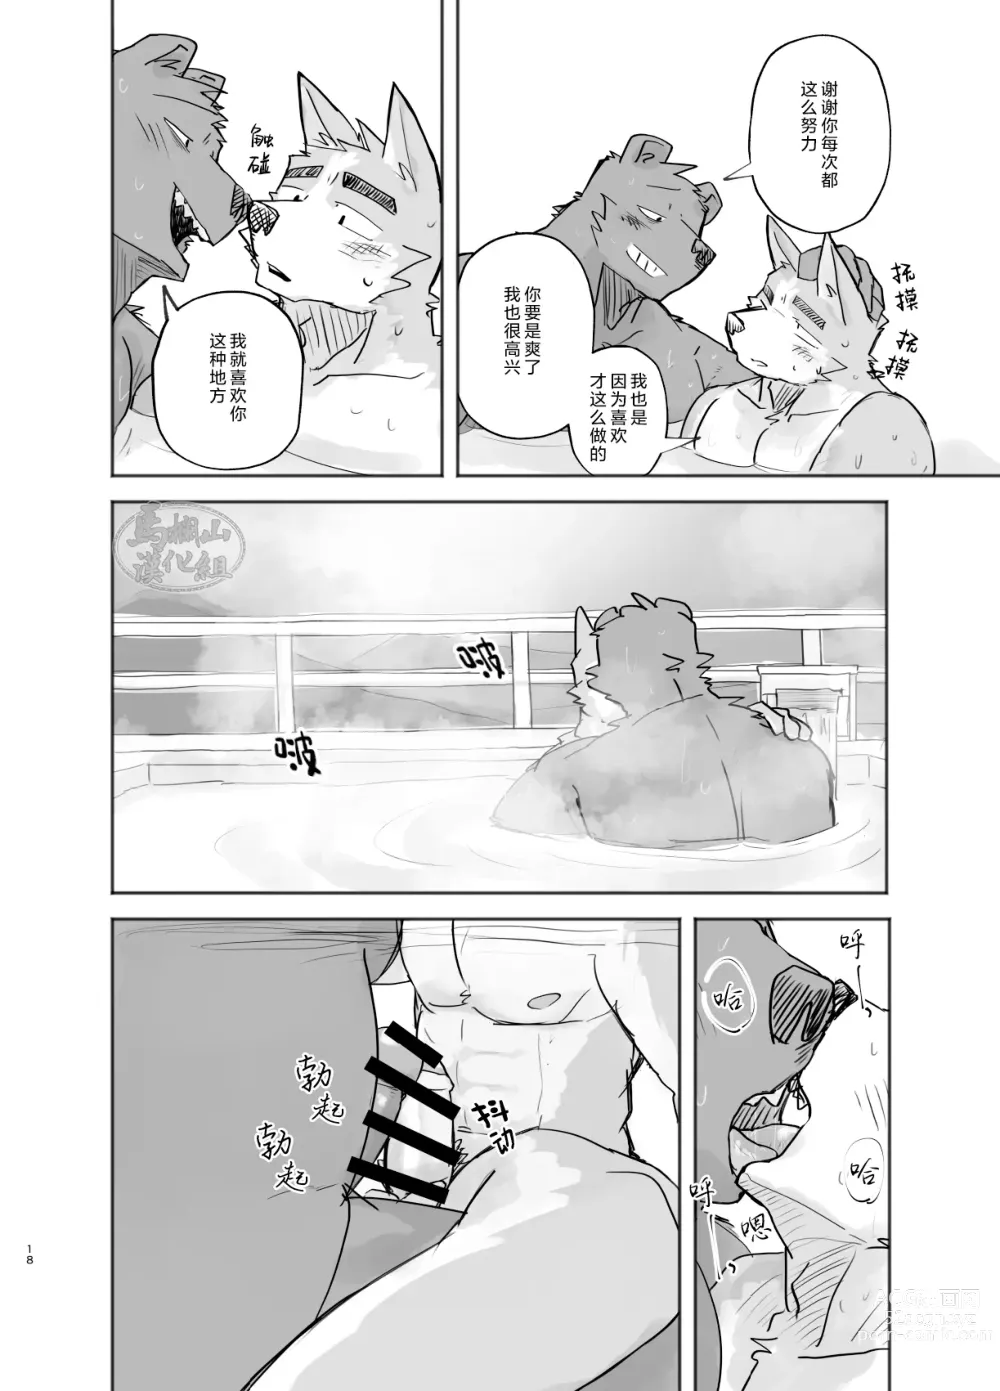 Page 18 of doujinshi 温泉野合时